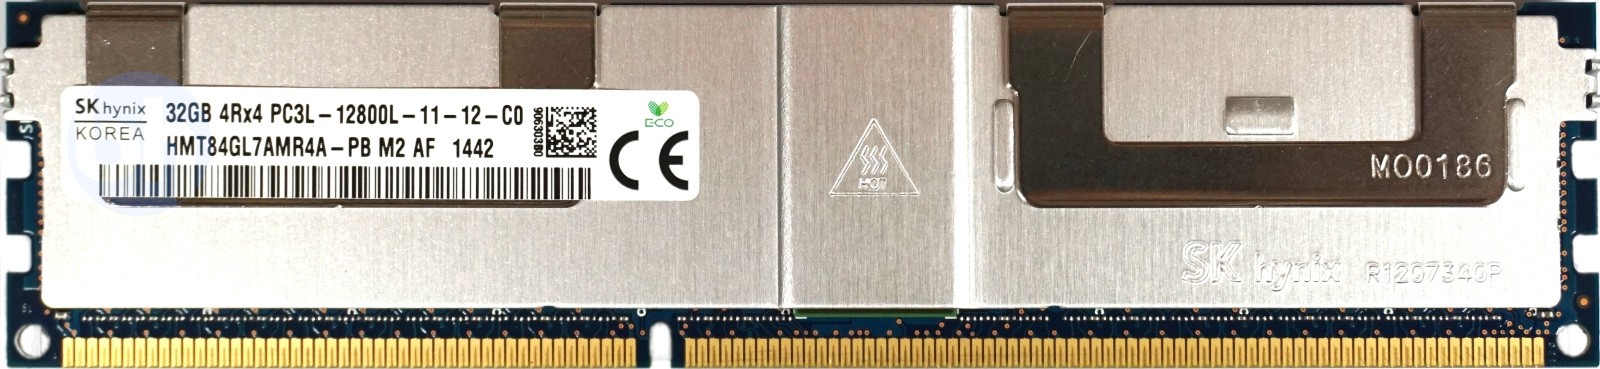 Hynix - 32GB PC3L-12800L (DDR3 Low-Power-1600Mhz, 4RX4)